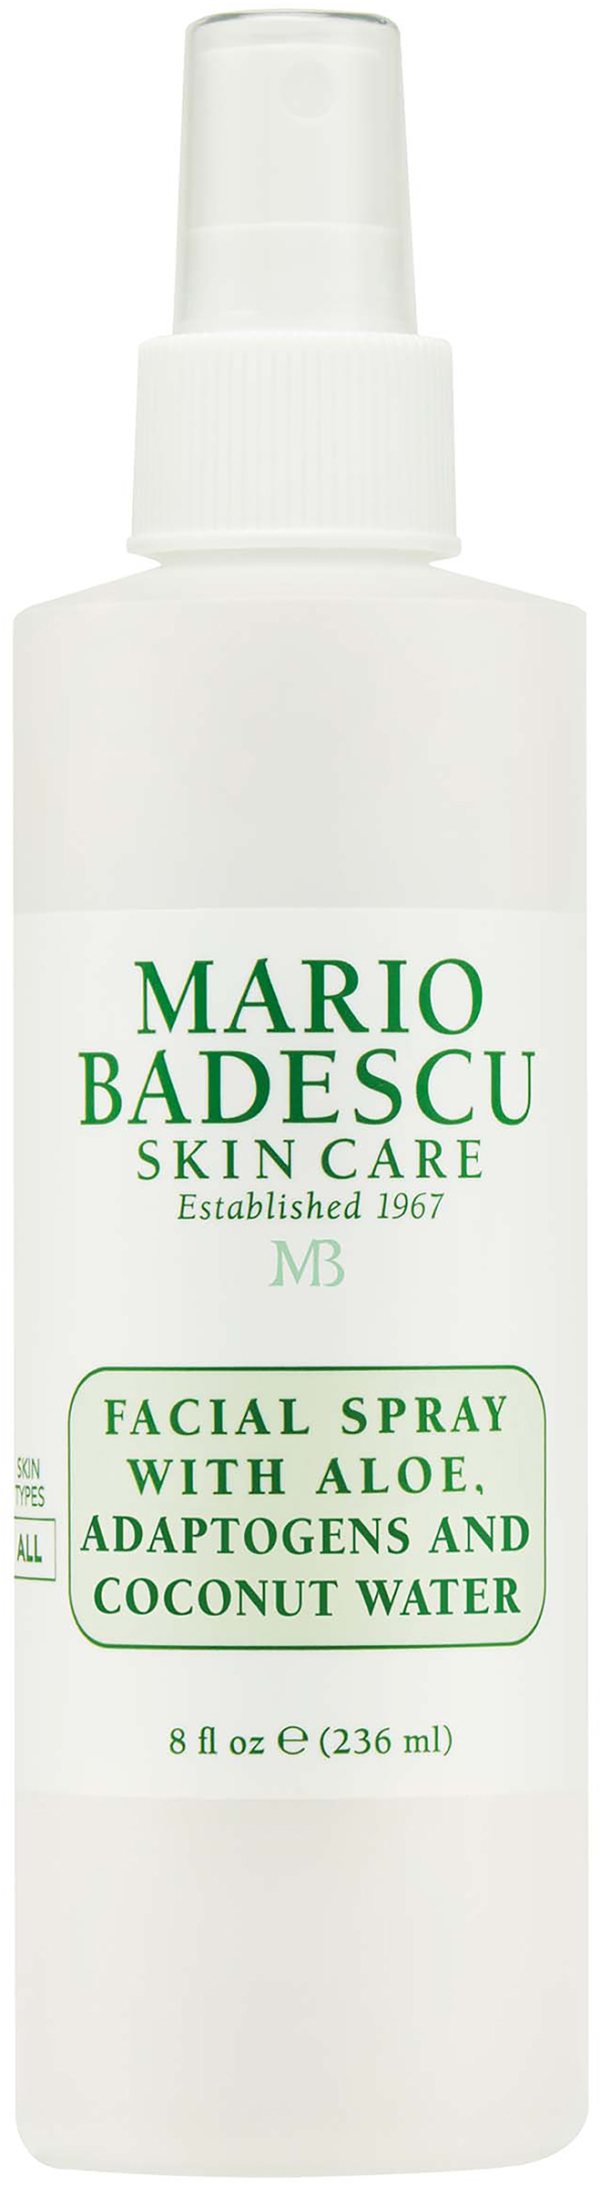 Mario Badescu Facial Spray With Aloe, Adaptogens And Coconut Wate 236 ml